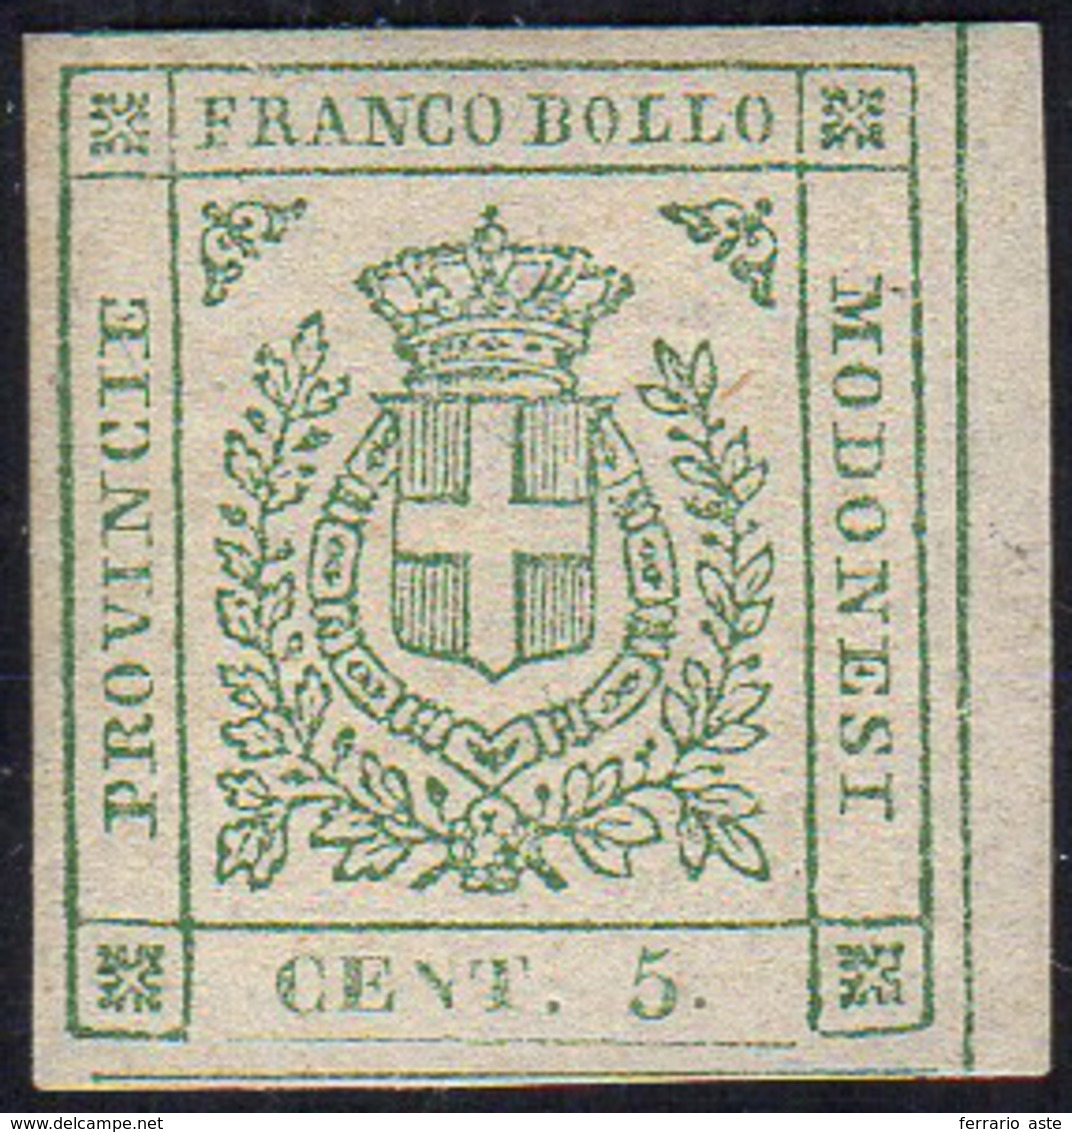 1859 - 5 Cent. Verde (12), Bordo Di Foglio, Gomma Originale, Perfetto. Bello. G.Oliva.... - Modène